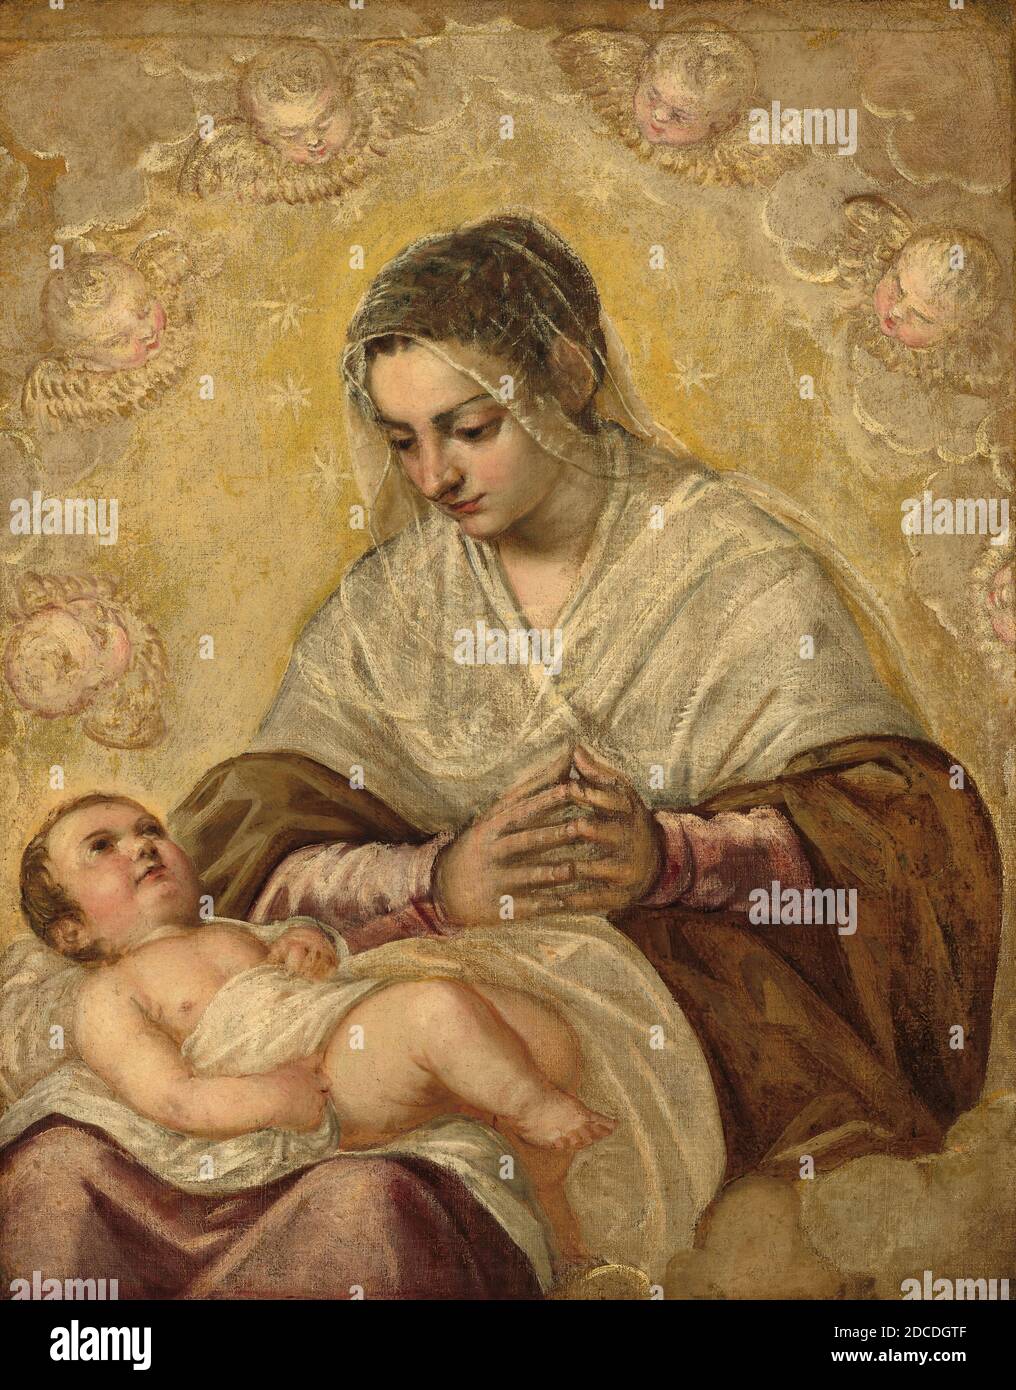 Jacopo Tintoretto, (pittore), Veneziano, 1518 o 1519 - 1594, italiano XVI secolo, (pittore), la Madonna delle Stelle, c.. 1575/1585, olio su tela, totale: 92.7 x 72.7 cm (36 1/2 x 28 5/8 in.), incorniciato: 118.4 x 99 x 8.8 cm (46 5/8 x 39 x 3 7/16 in Foto Stock